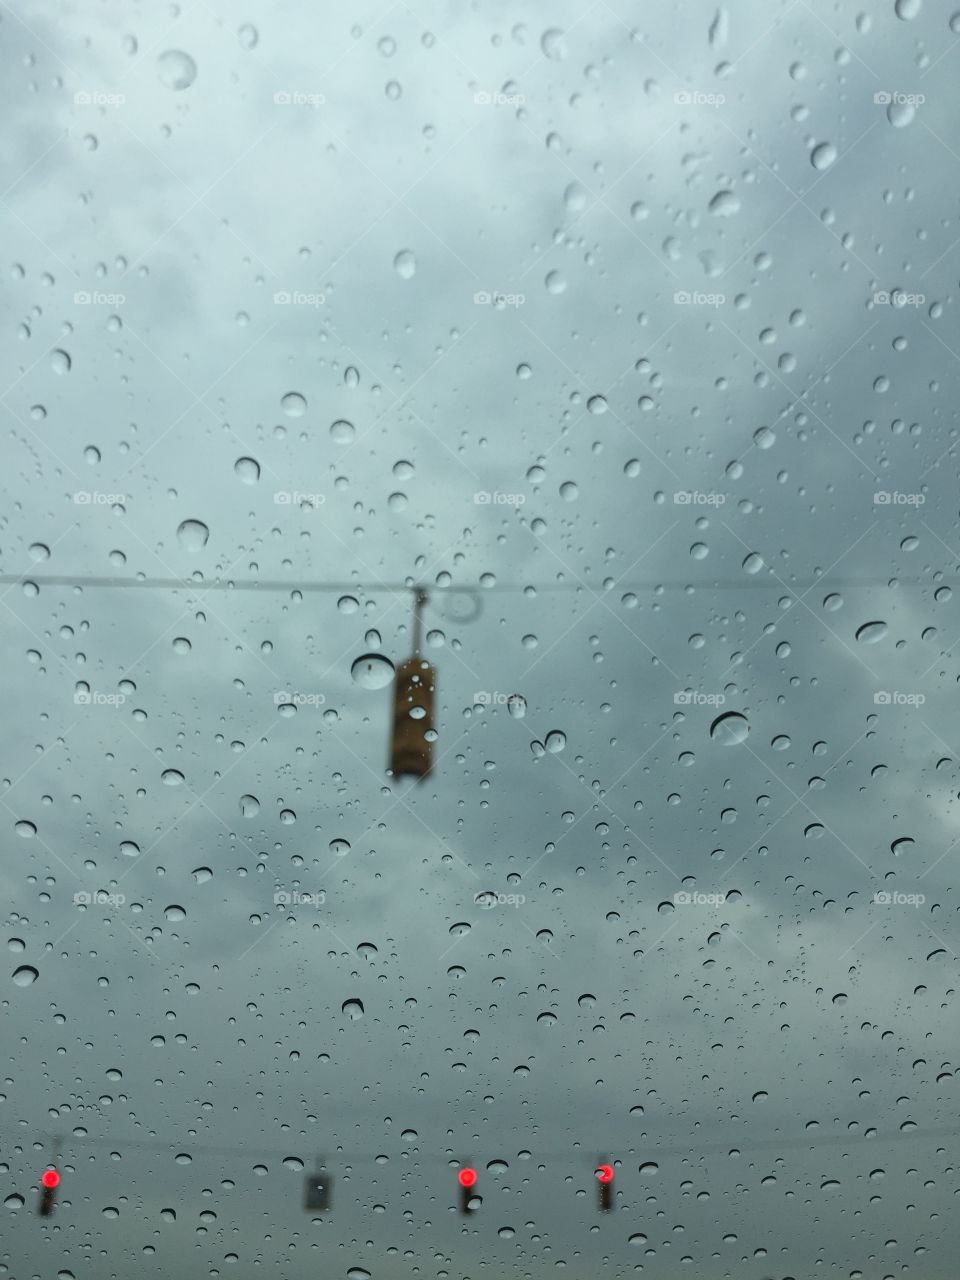 Rain on window 